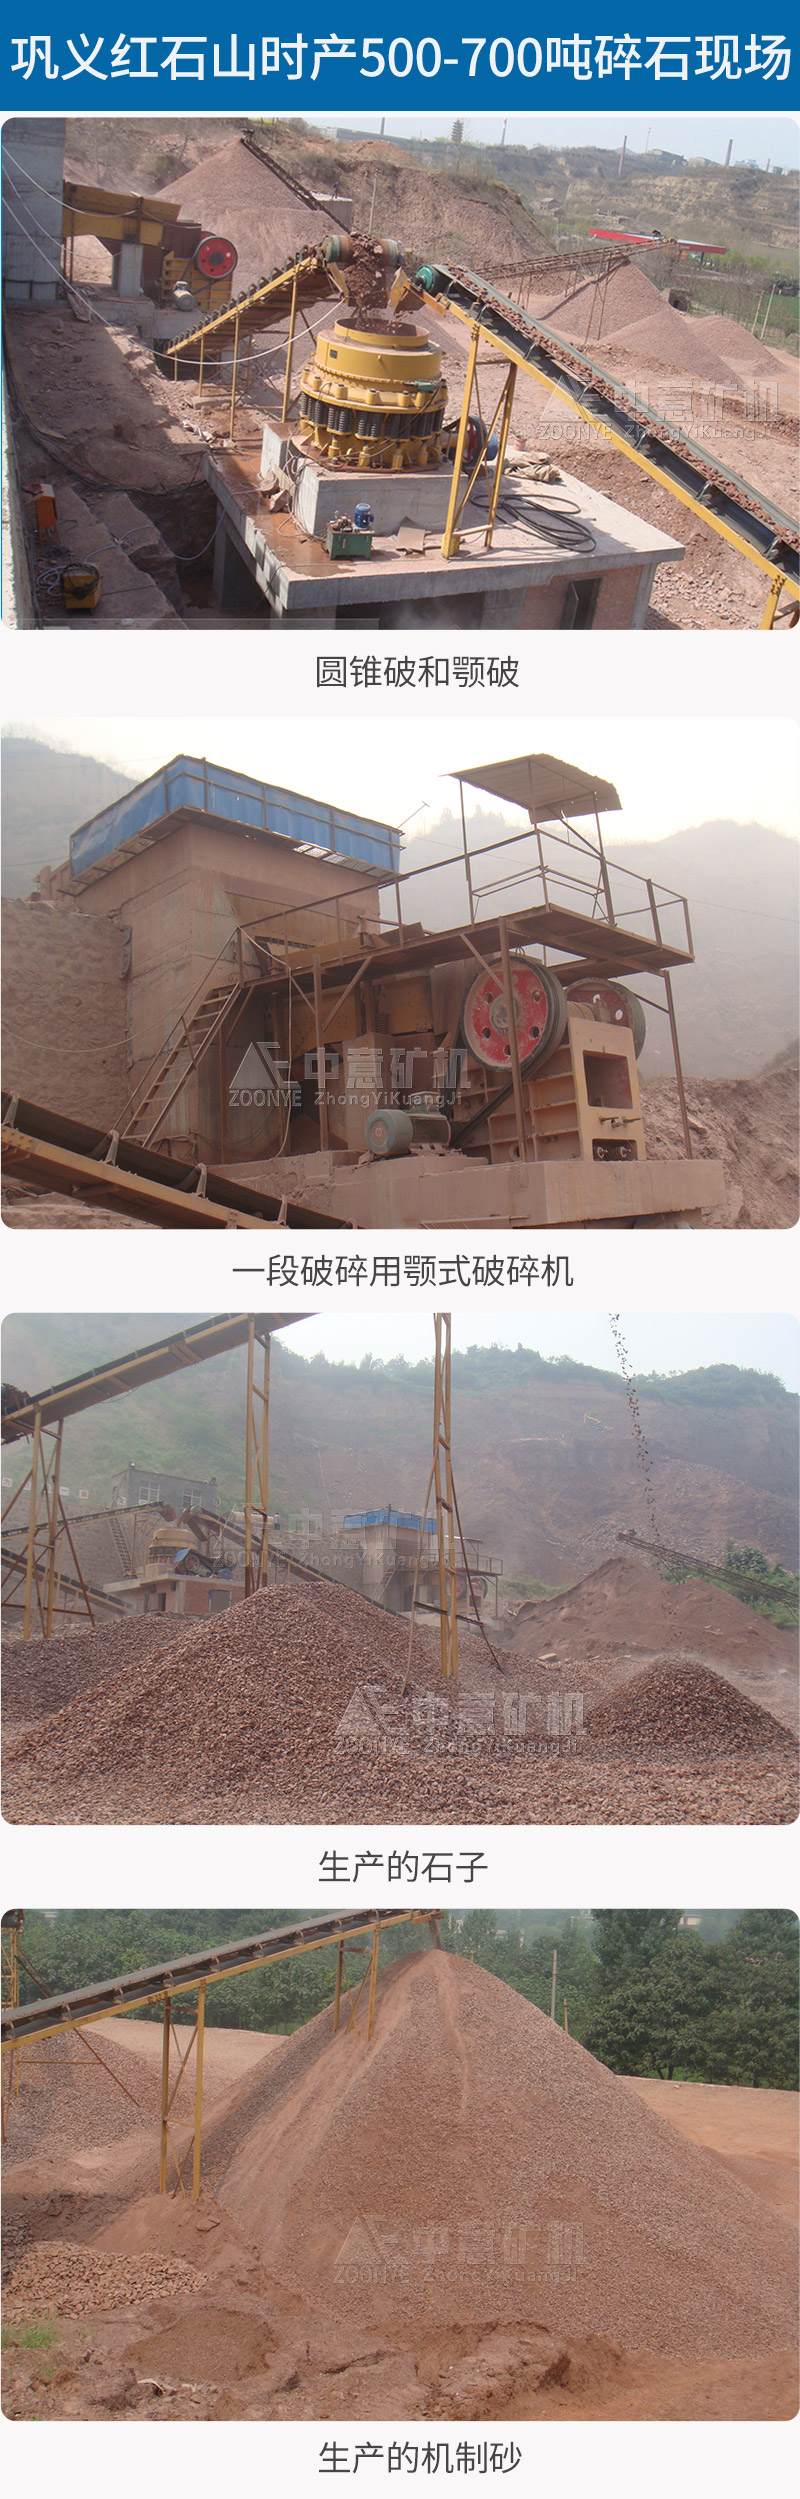 巩义红石山时产500-700吨碎石生产线.jpg